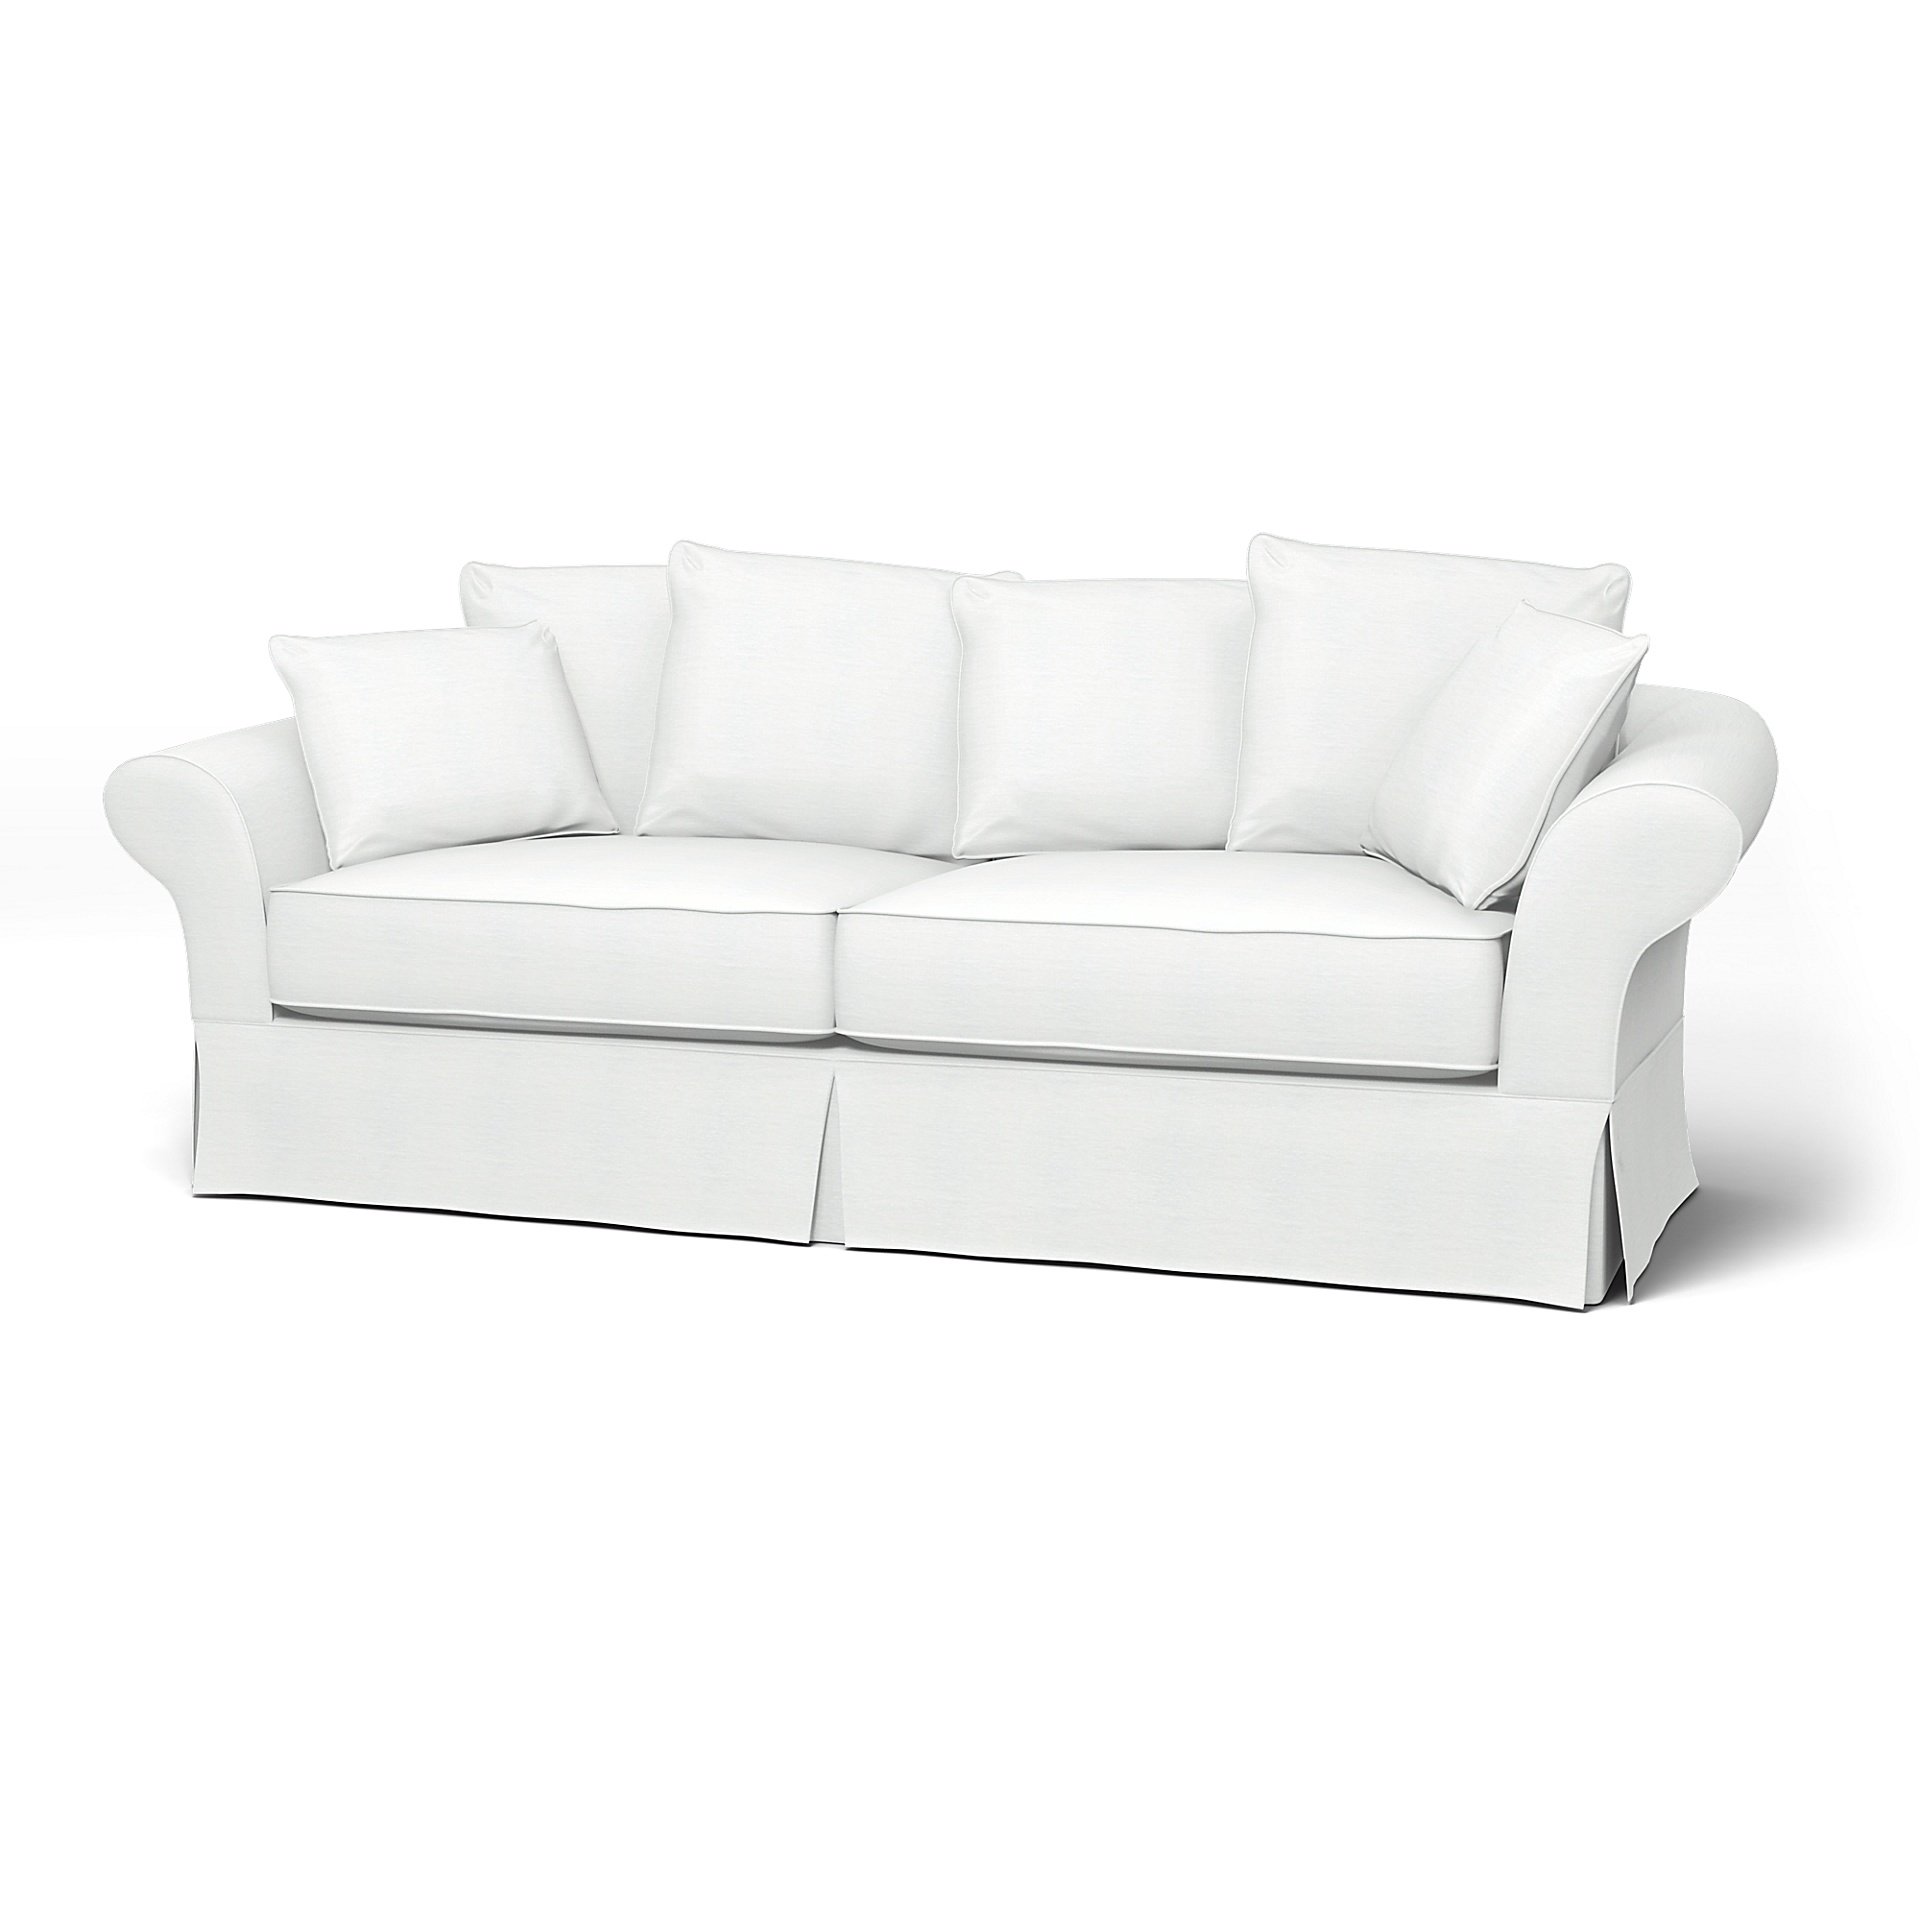 IKEA - Backamo 3 Seater Sofa Cover, White, Linen - Bemz